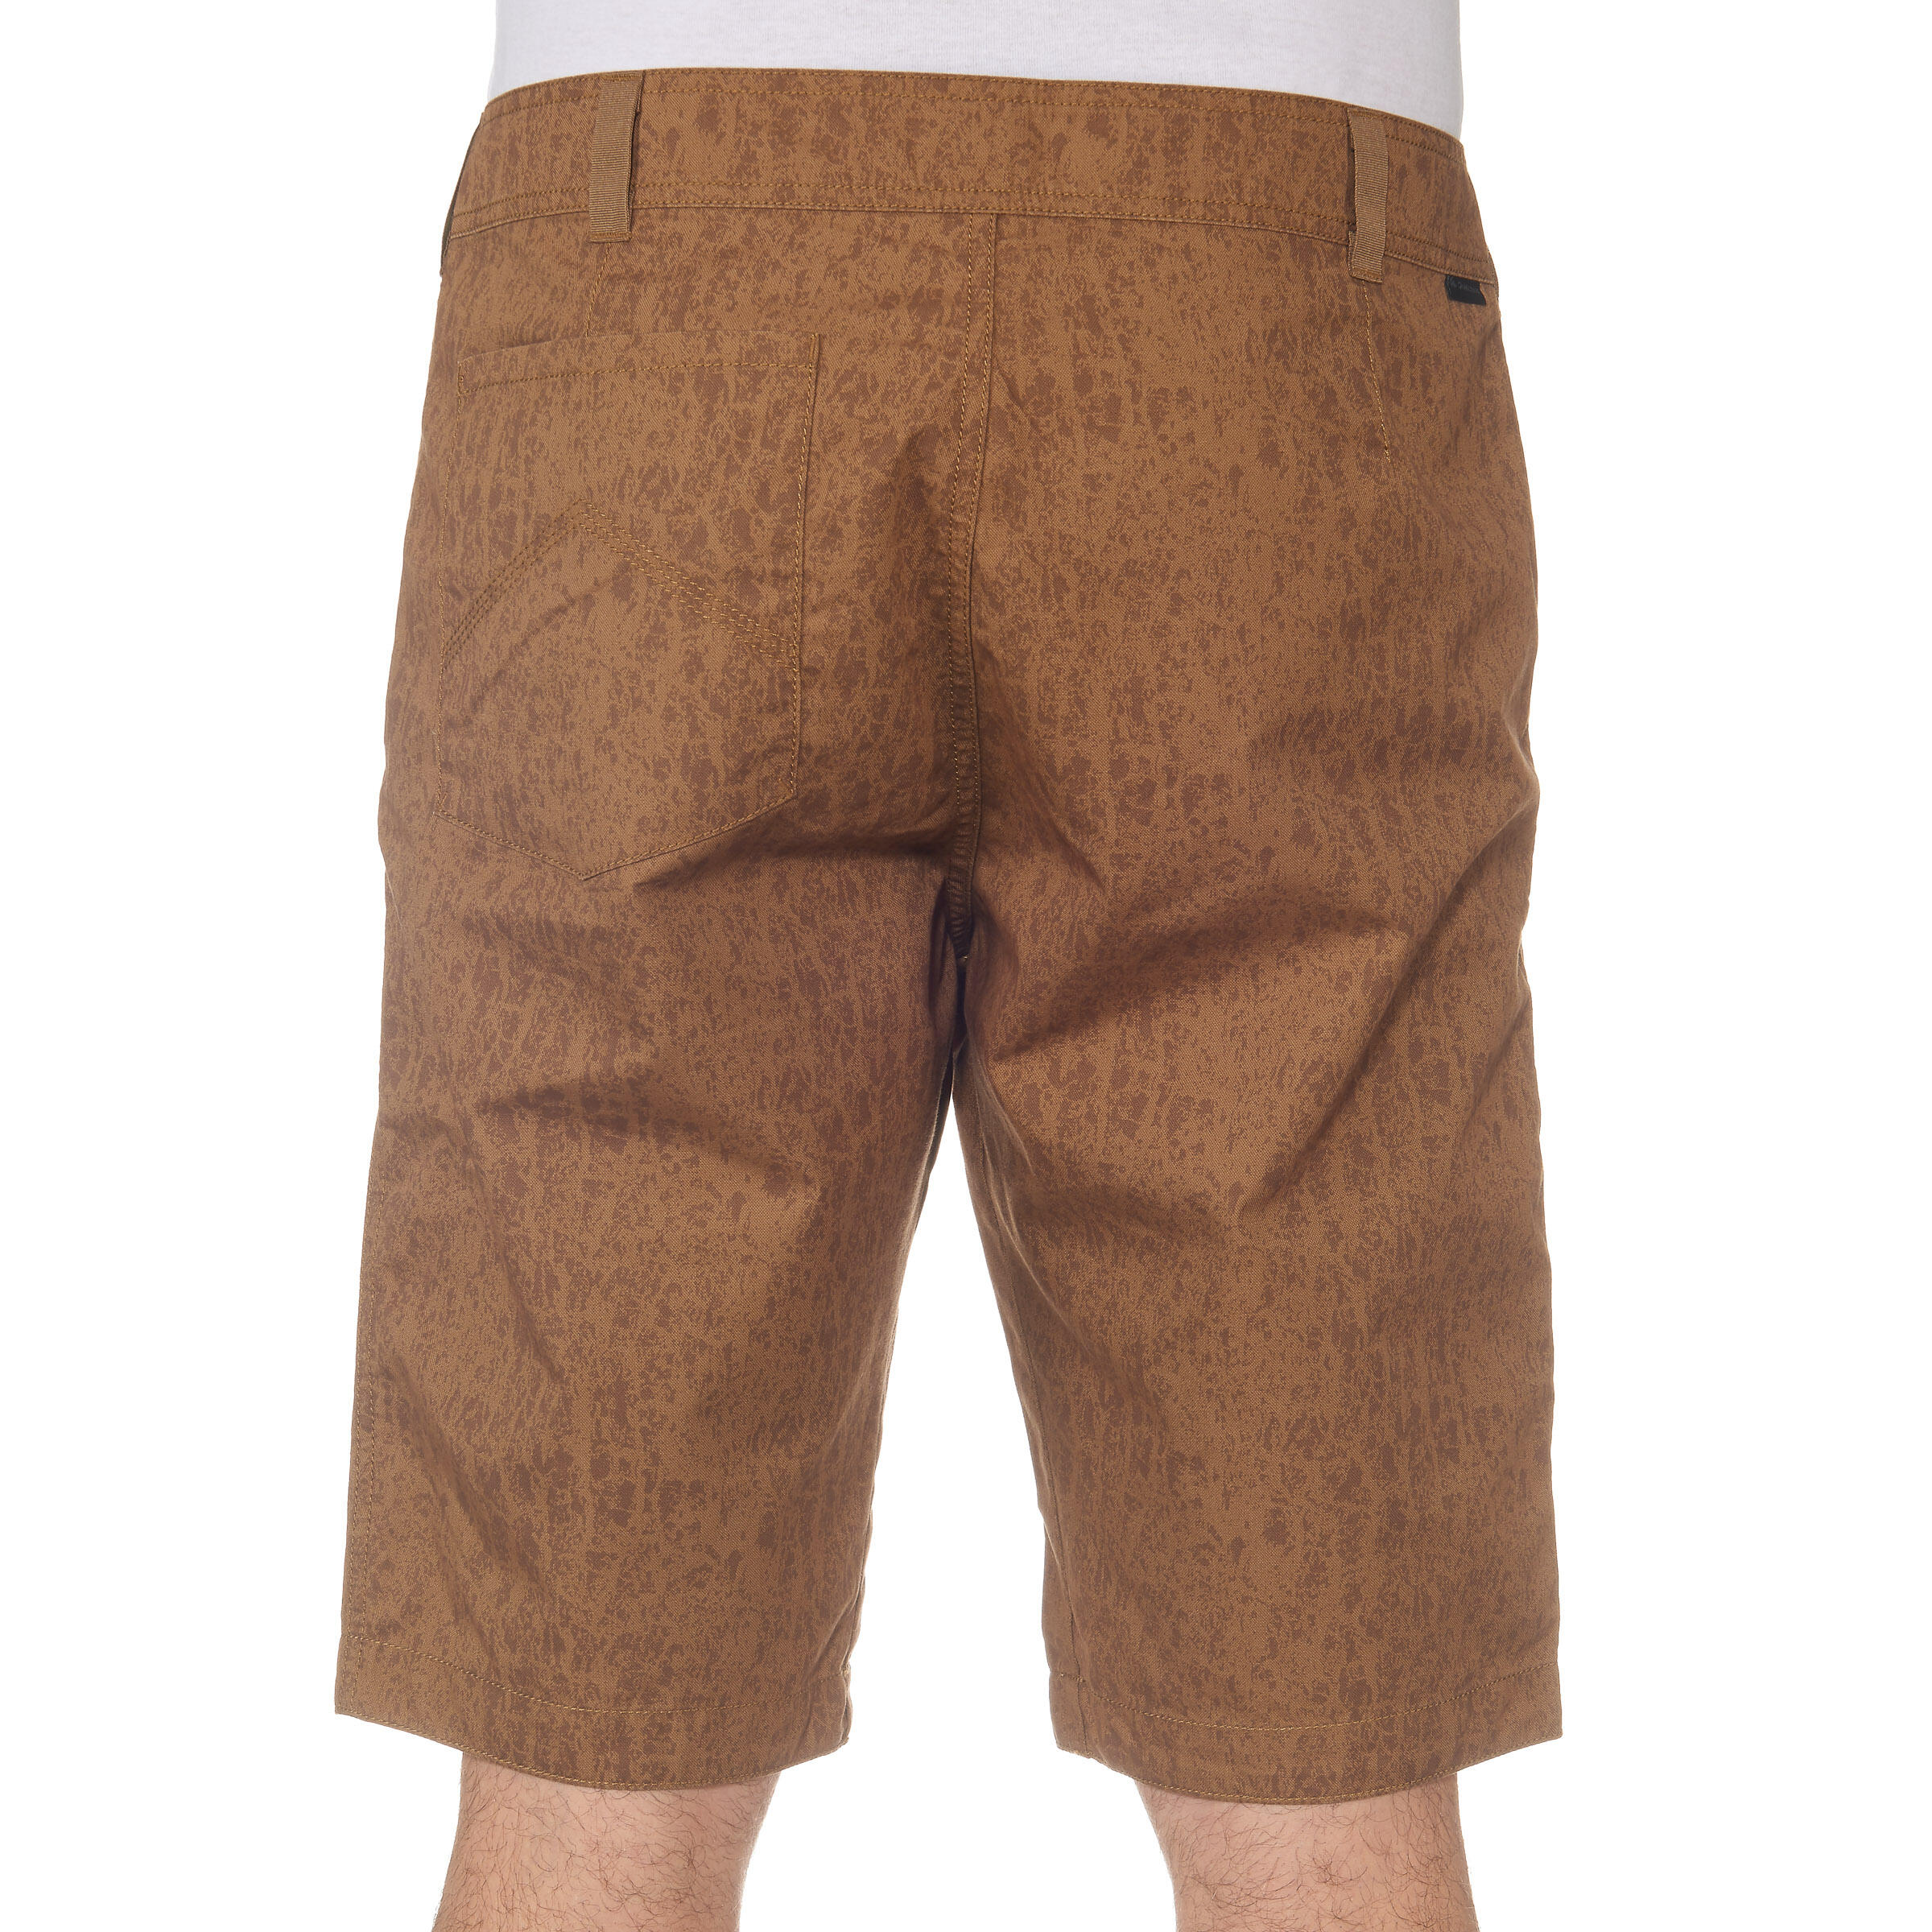 Arpenaz 100 Men's Hiking Shorts - Brown Motif 4/13